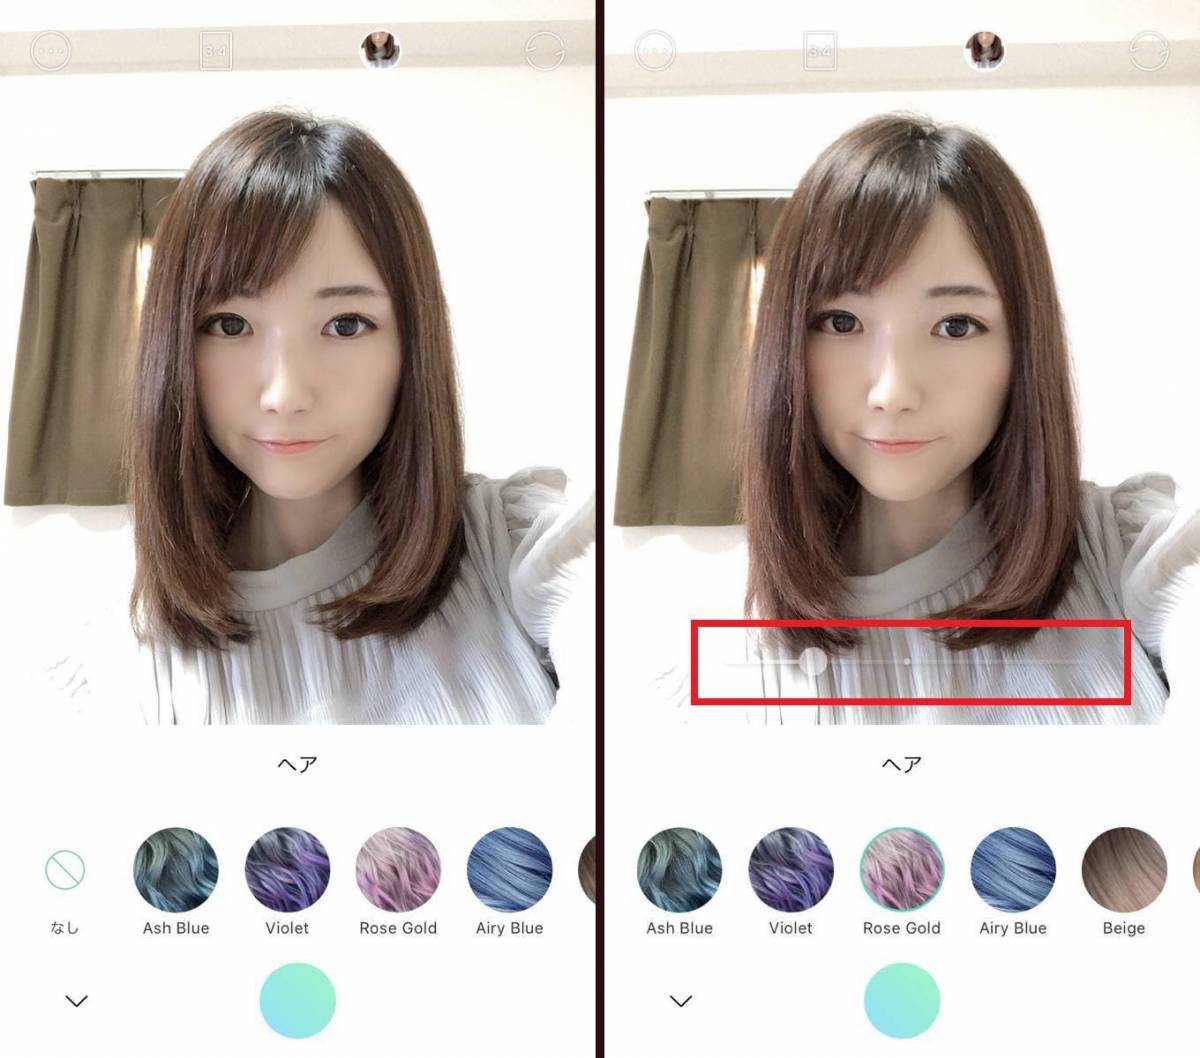 髪色を変えるヘアカラーアプリ比較 セルフカラーを試す前に似合う色を発見の画像 14枚目 Appliv Topics